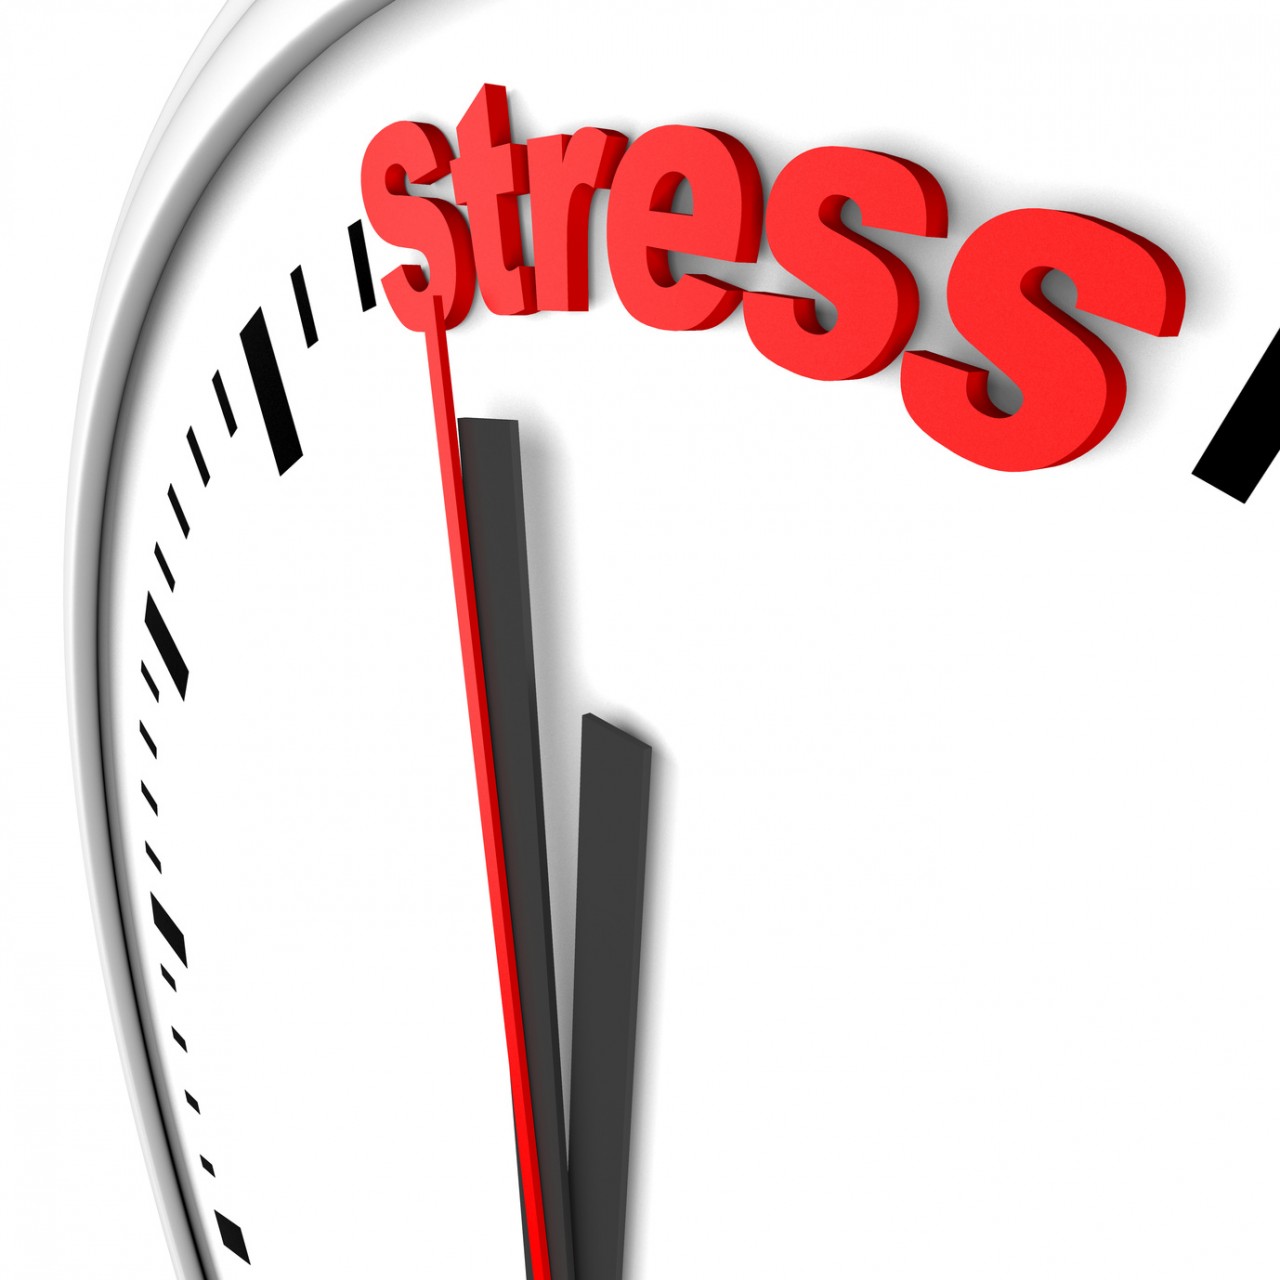 Bereits heute klagen 40% der Arbeitnehmenden oft über Stress bei der Arbeit